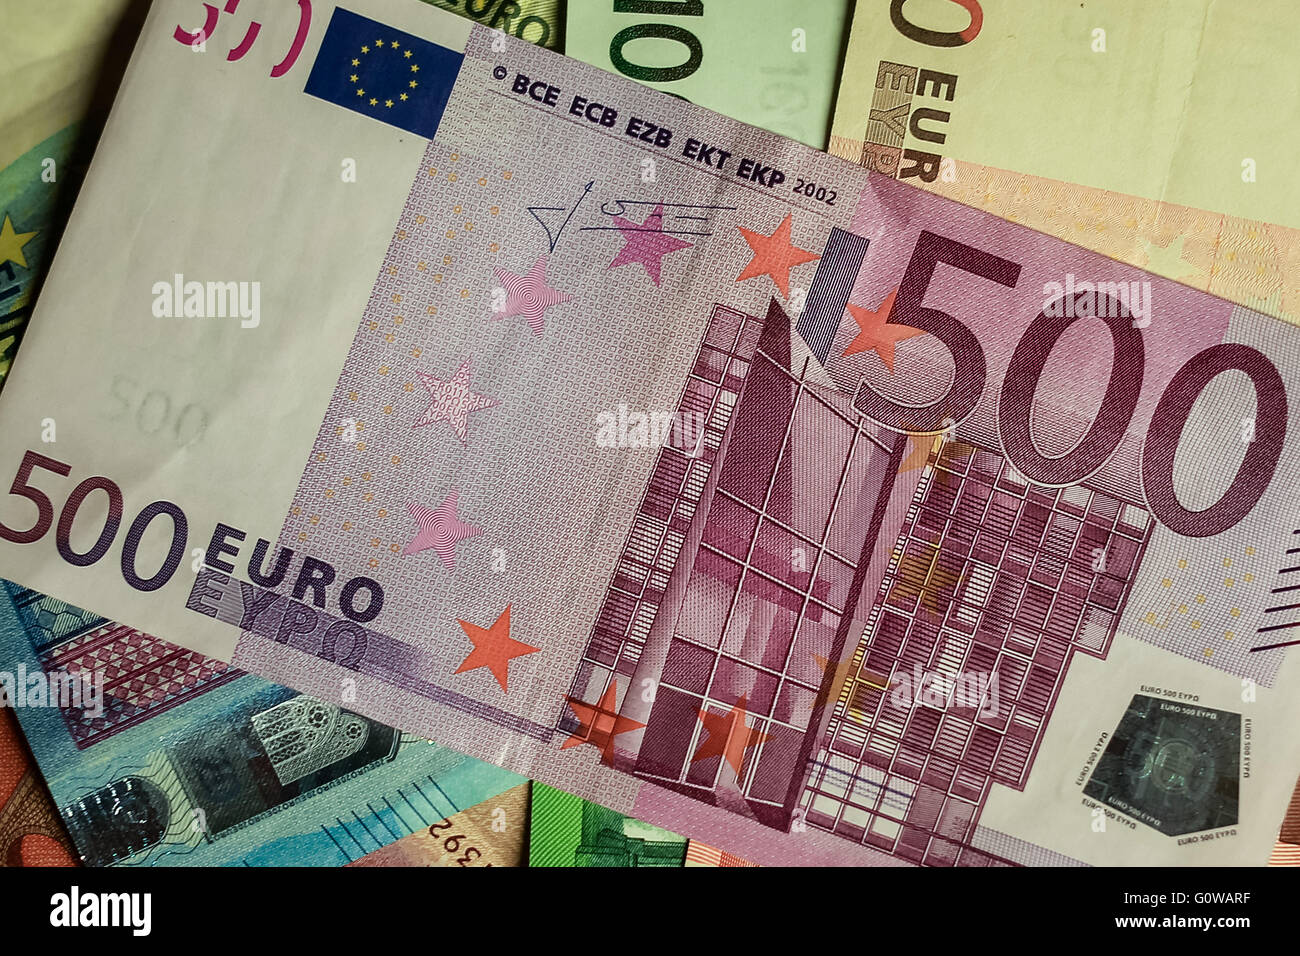 500 евро купюра принимают. 500 Евро. Купюры евро. Банкнота 500 евро. Евро купюра 500 евро.